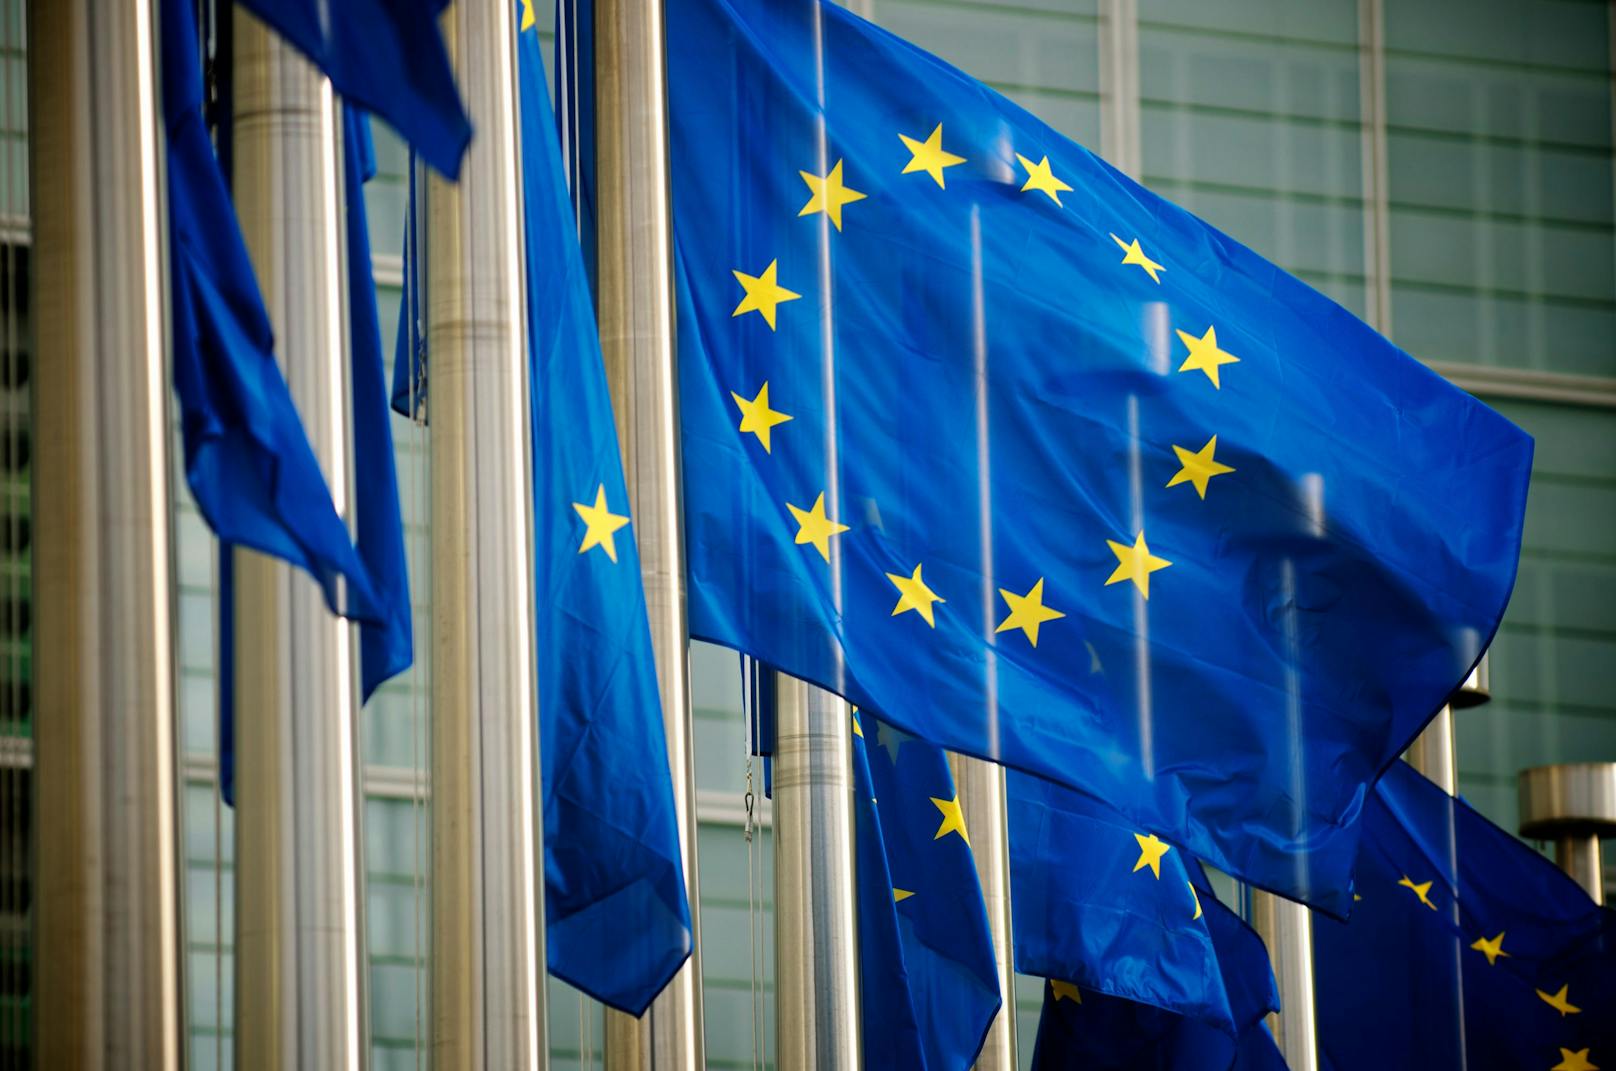 EU-Kommission startet Rechtsverfahren gegen Ungarn